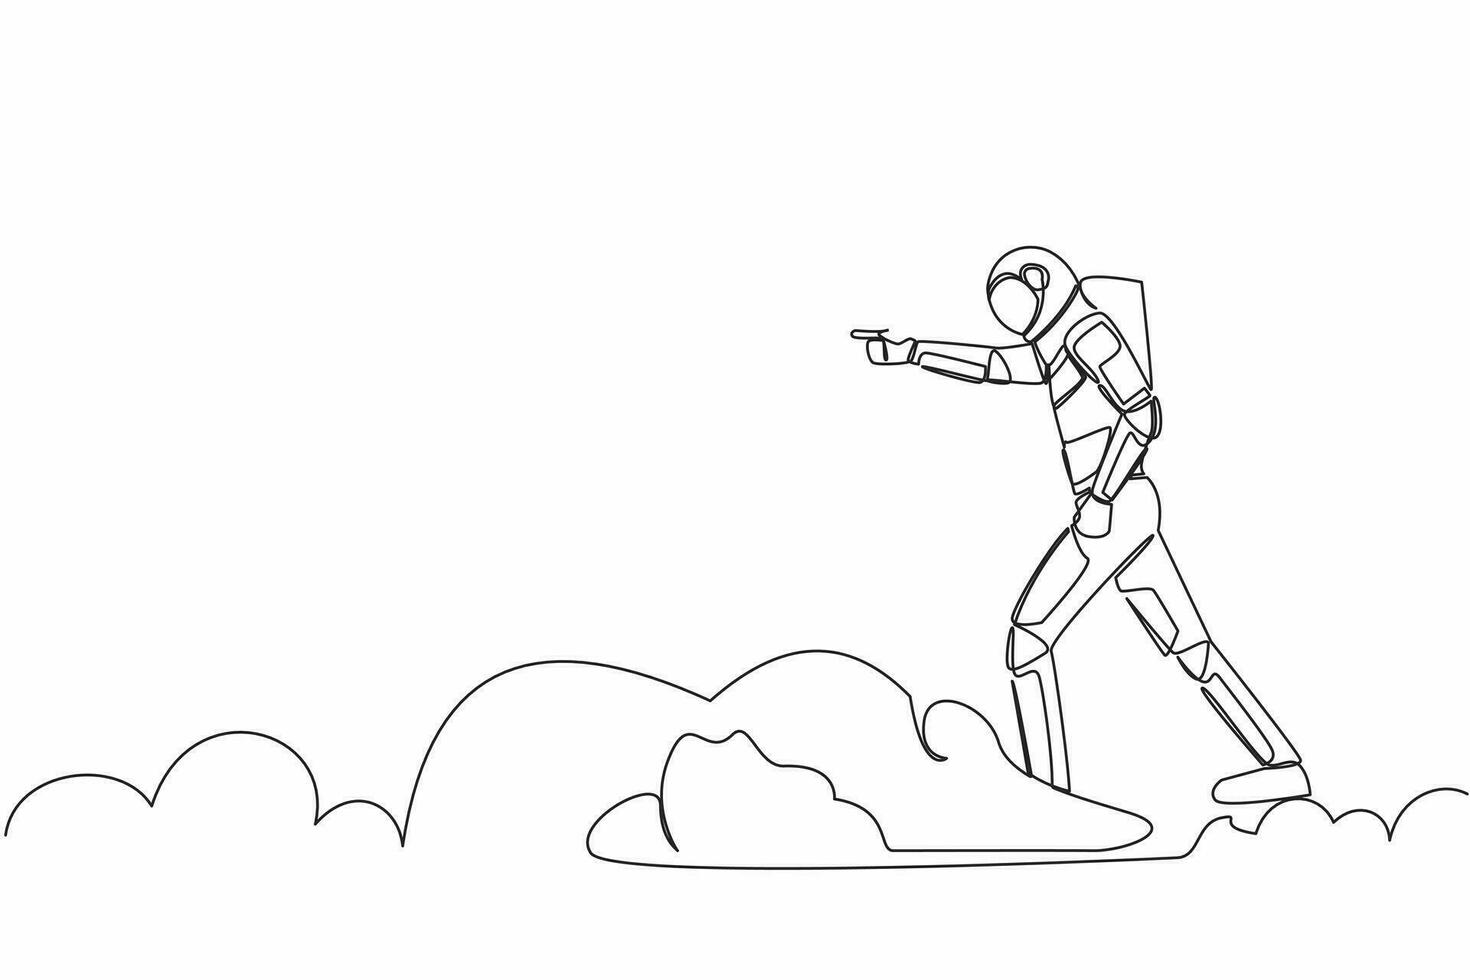 Single einer Linie Zeichnung jung Astronaut Reiten Wolke auf Himmel, zeigen nach vorne, gehen zu Zukunft Innovation von Raum Industrie. kosmisch Galaxis Raum. kontinuierlich Linie zeichnen Grafik Design Vektor Illustration